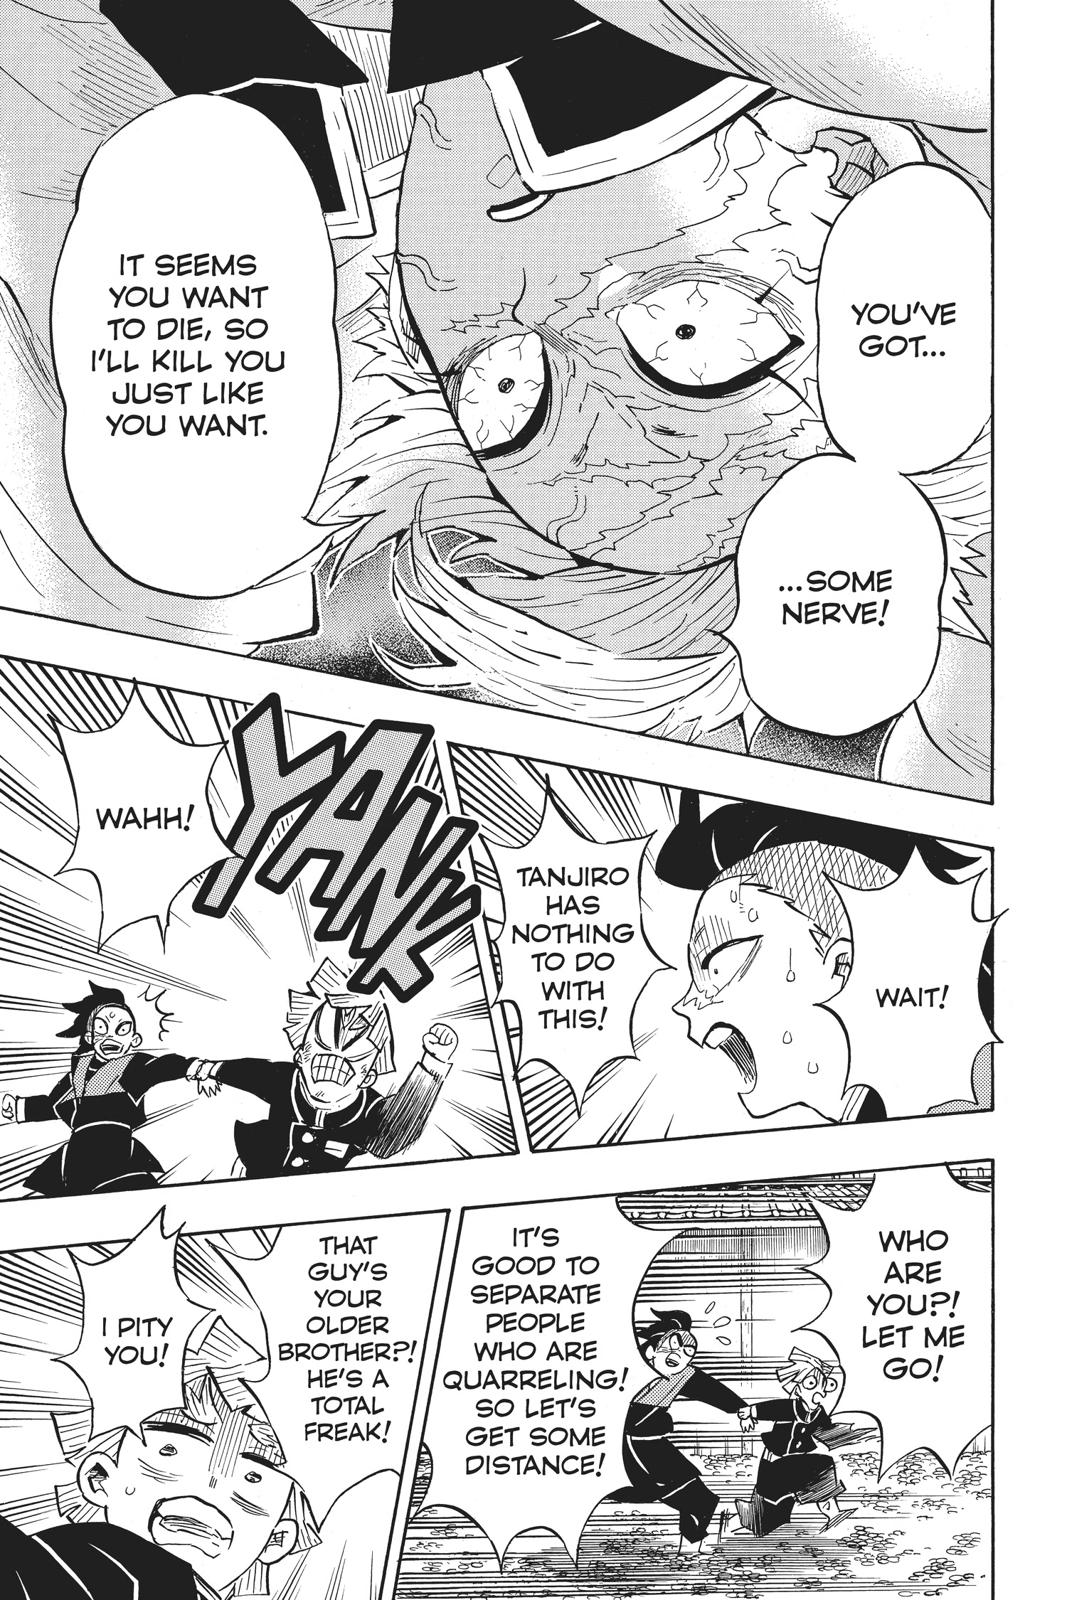 Demon Slayer Manga Manga Chapter - 133 - image 14